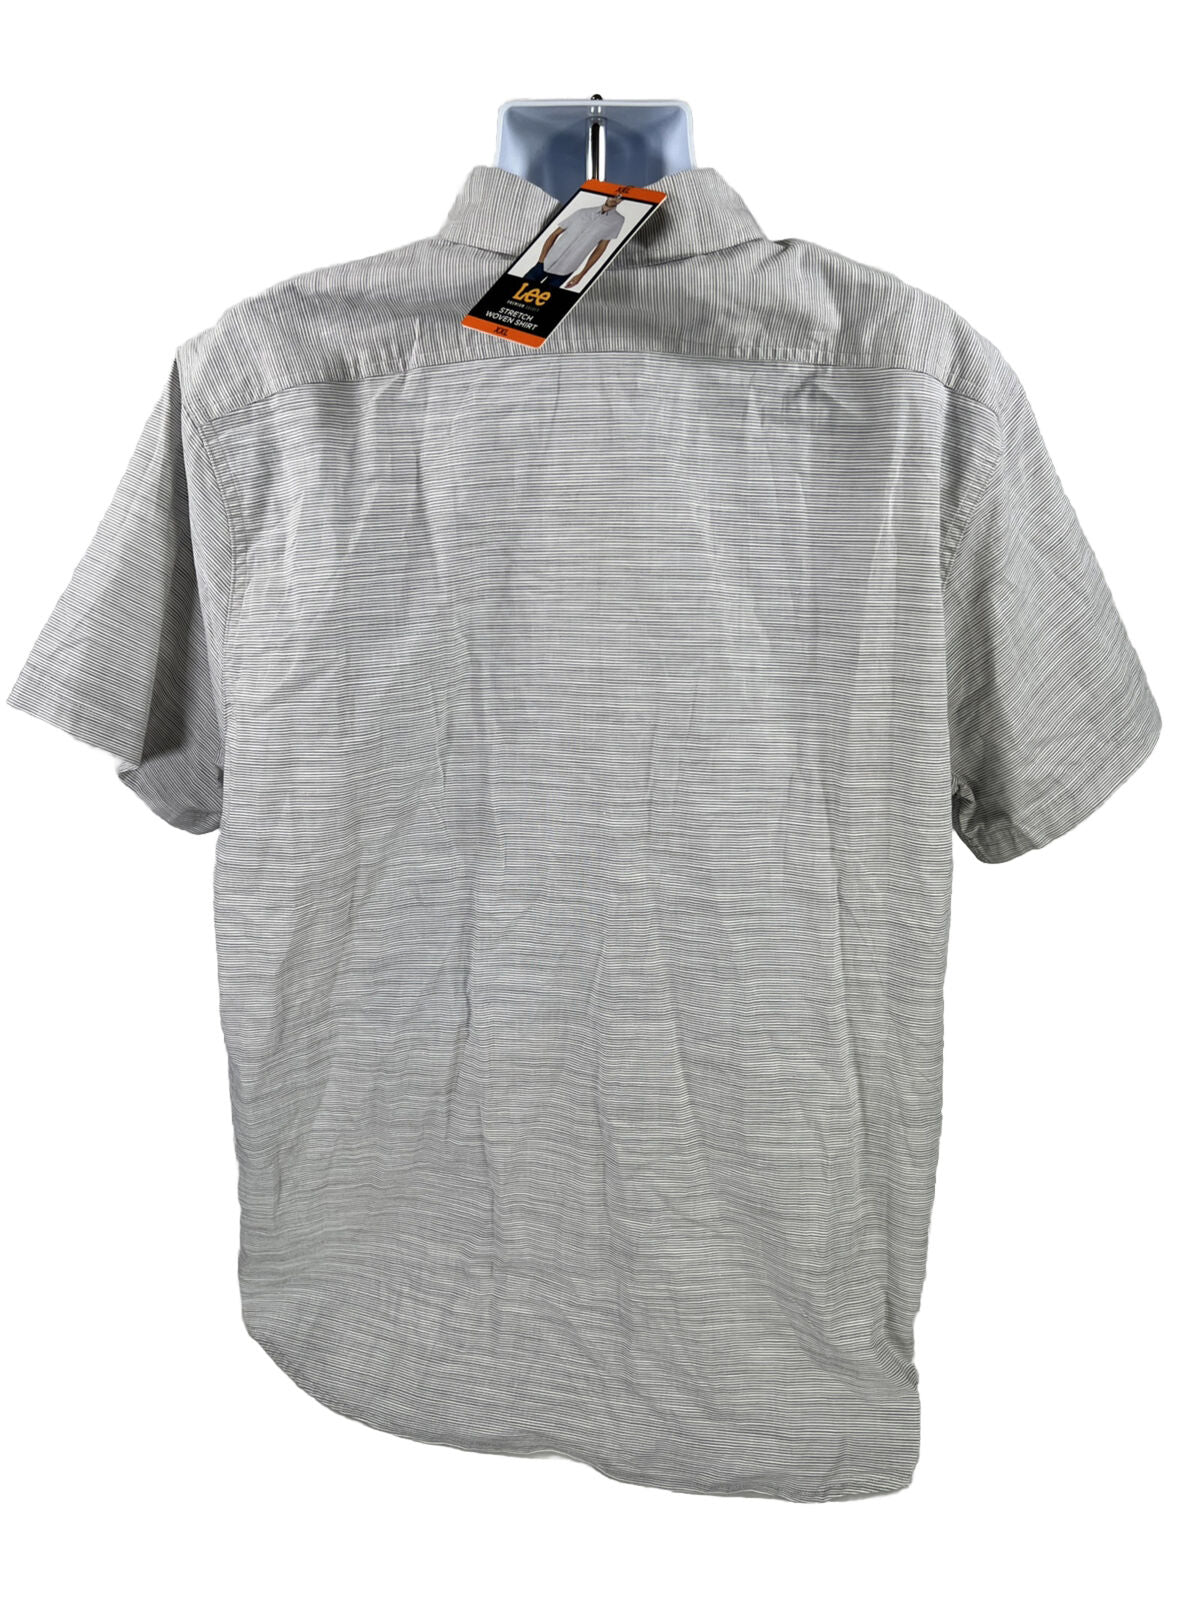 NEW Lee Men's Gray Striped Short Sleeve Button Up Shirt - XXL